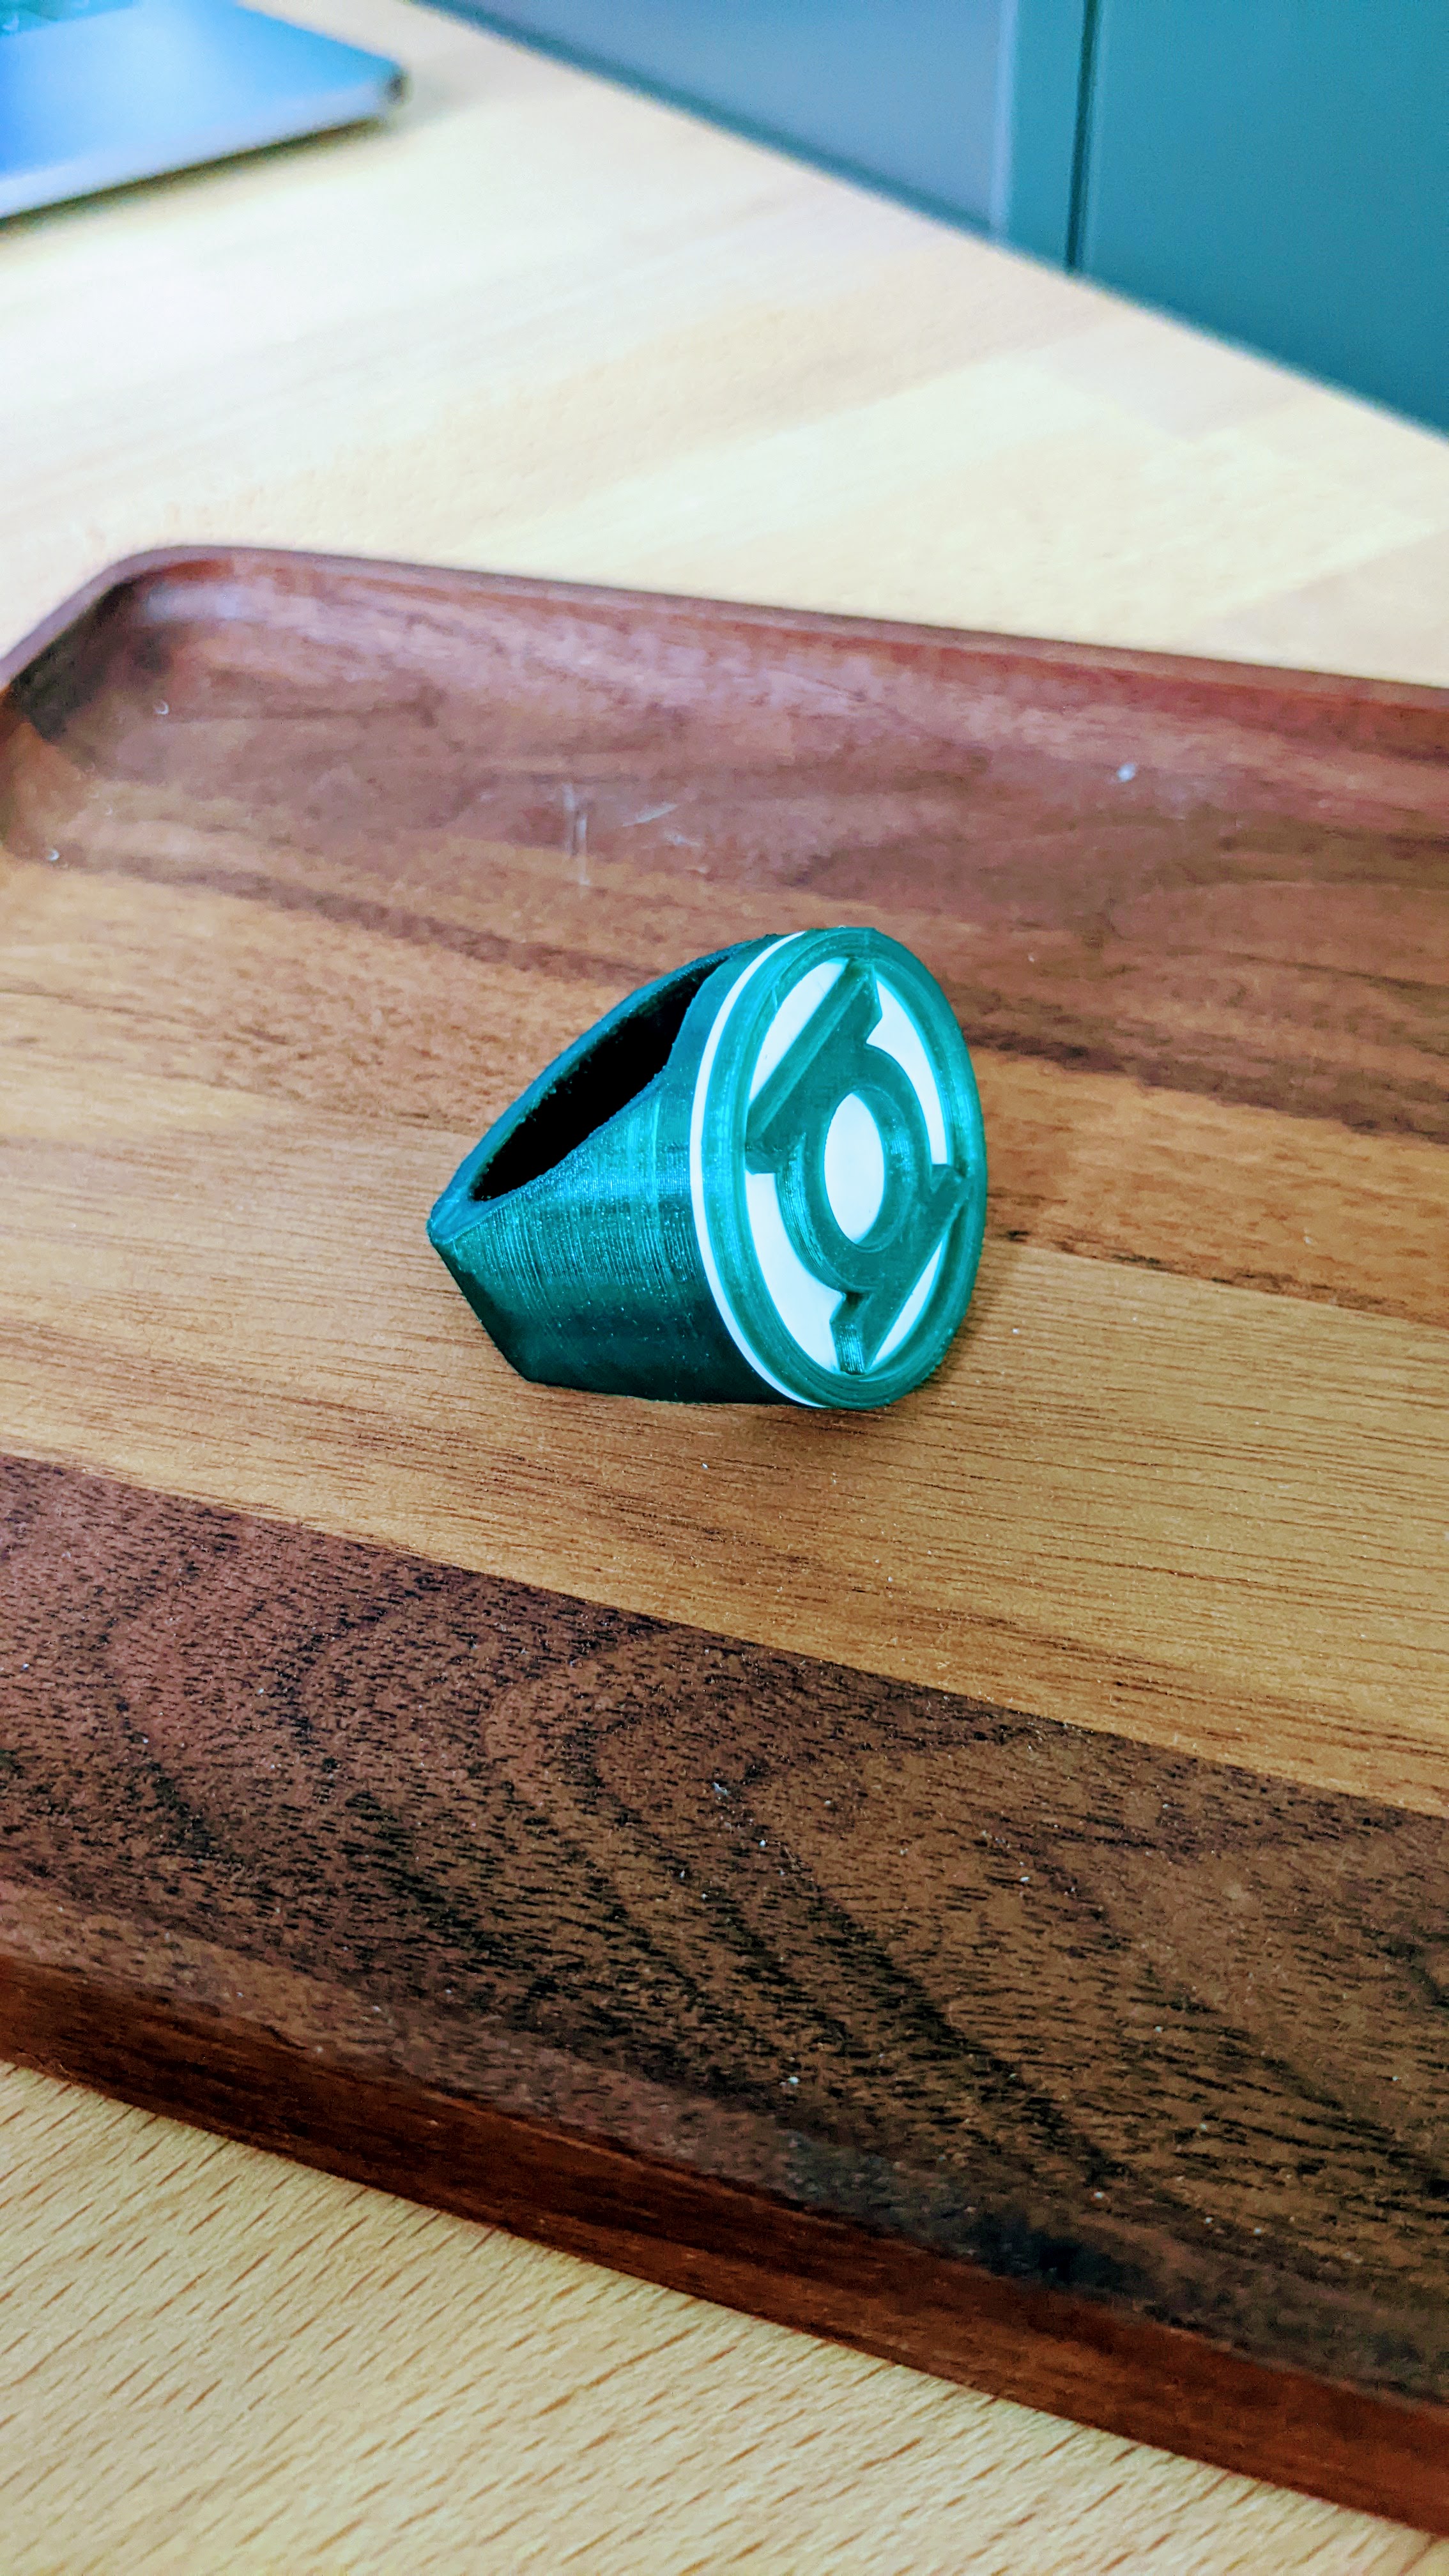 Green Lantern Ring